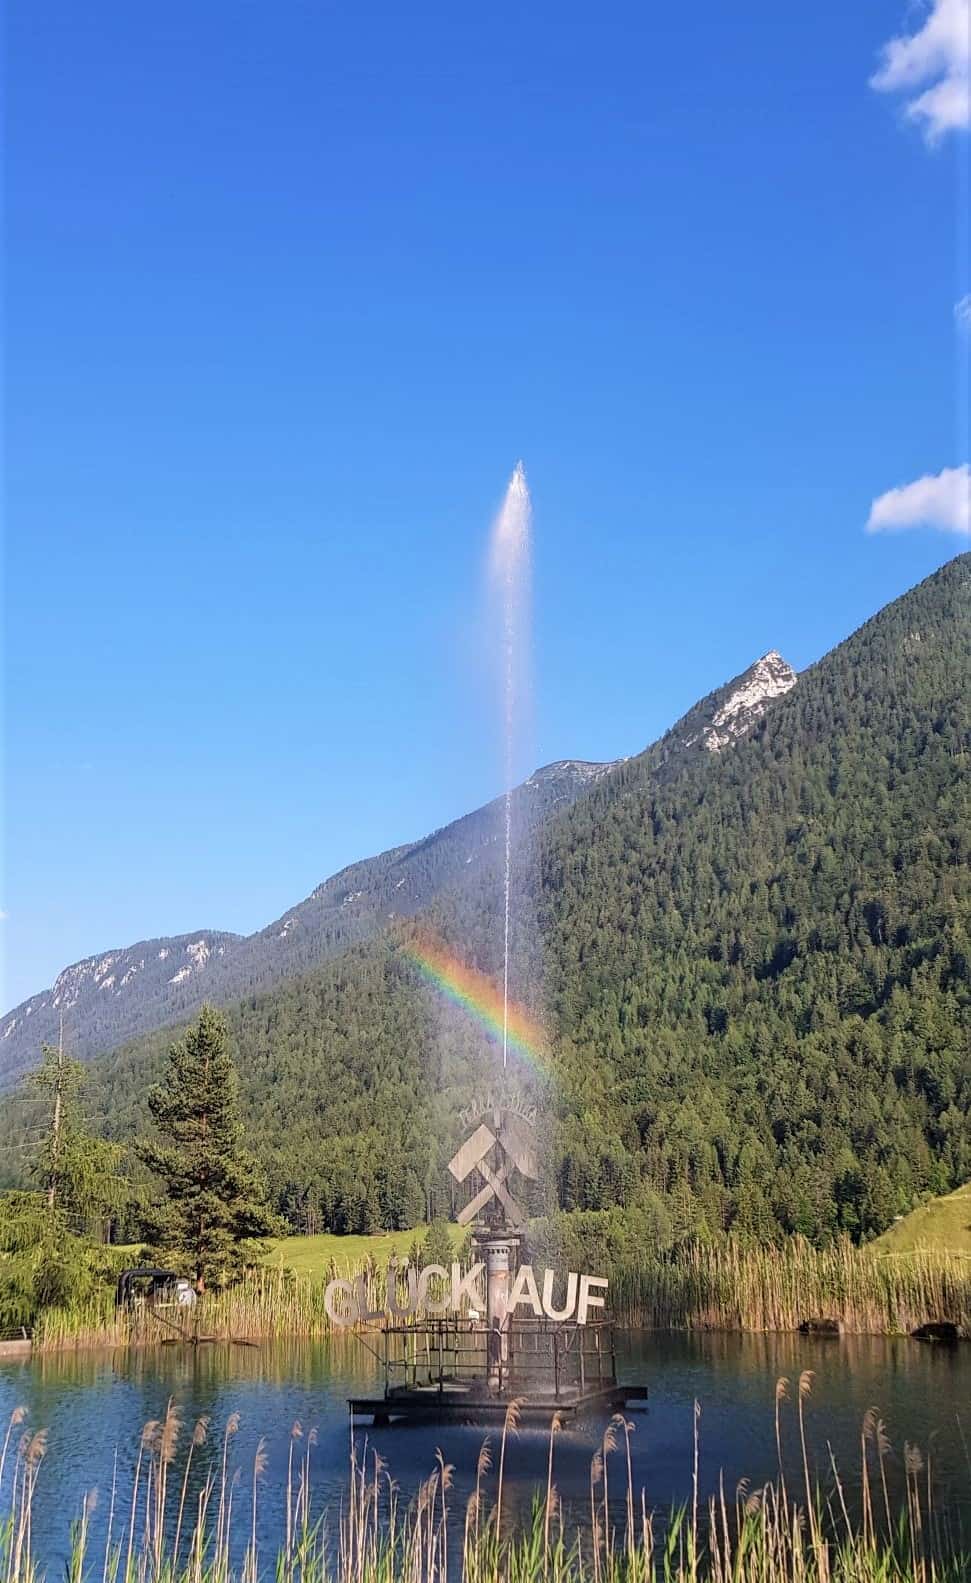 Glück auf Brunnen mit Regenbogen vor den Schaubergwerken Terra Mystica & Montana in Bad Bleiberg, Nähe Villach in Kärnten - Österreich.